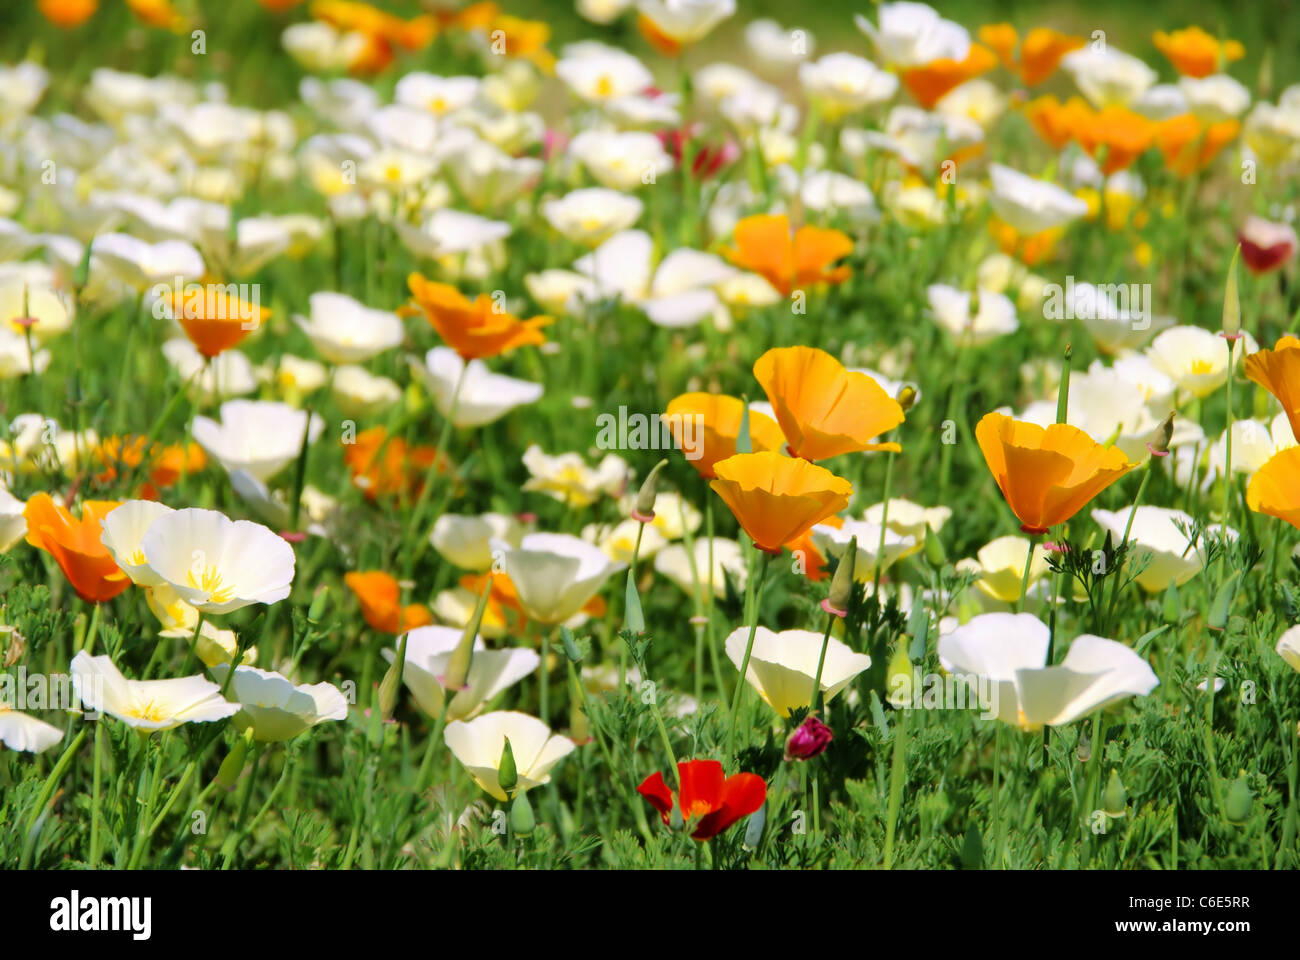 Kalifornischer Mohn - California poppy 24 Stock Photo